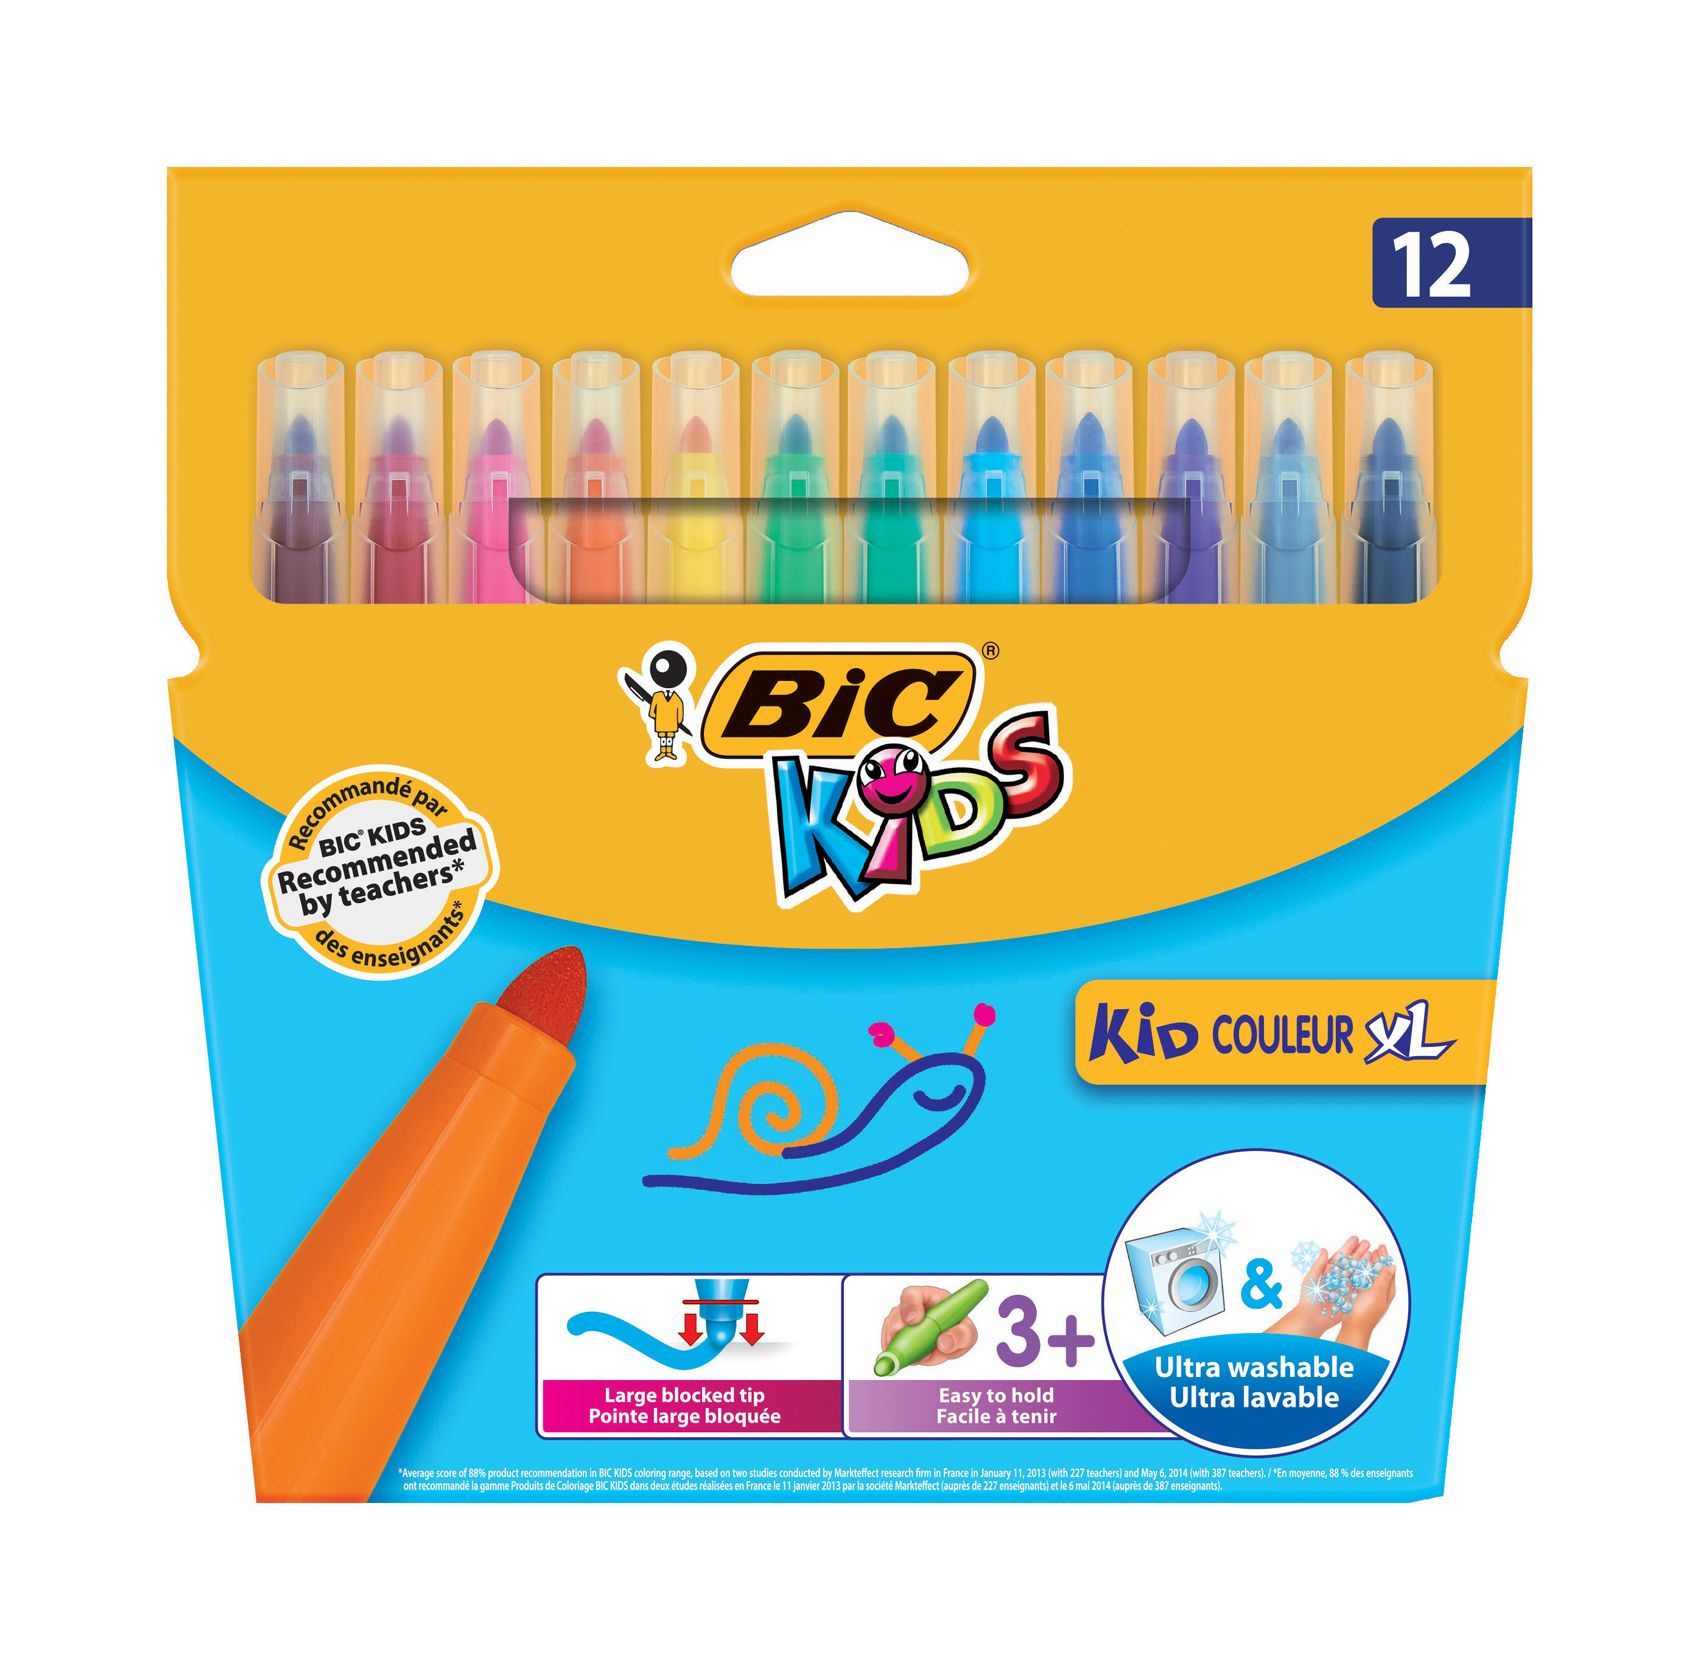 Crayons de couleur Aquarelle Etui de 12 - BIC AquaCouleur